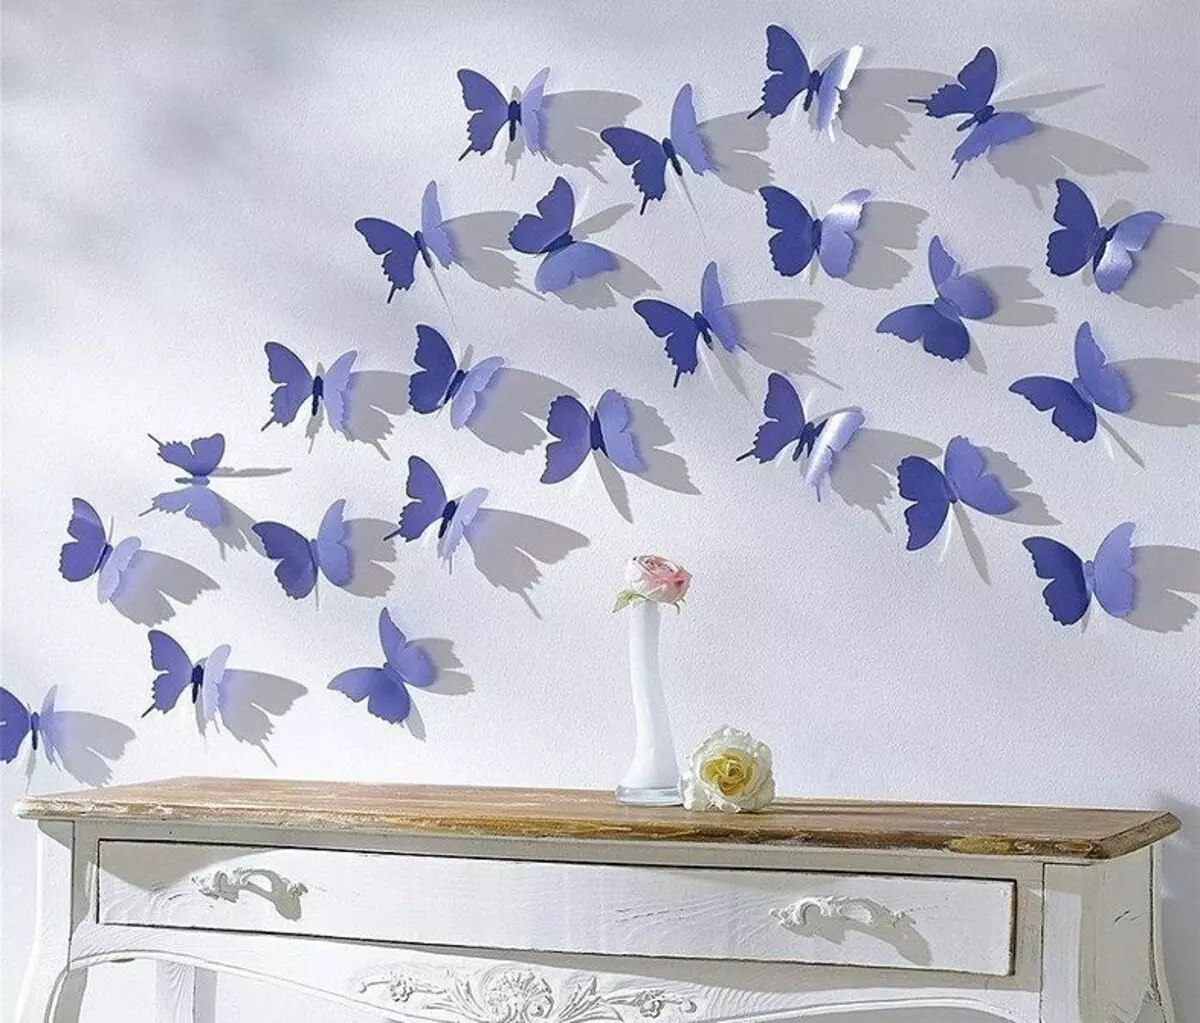 نحوه ساخت پروانه های کاغذی روی دیوار آن را خودتان انجام دهید: دستورالعمل ها و استنسیل ها 10208_21